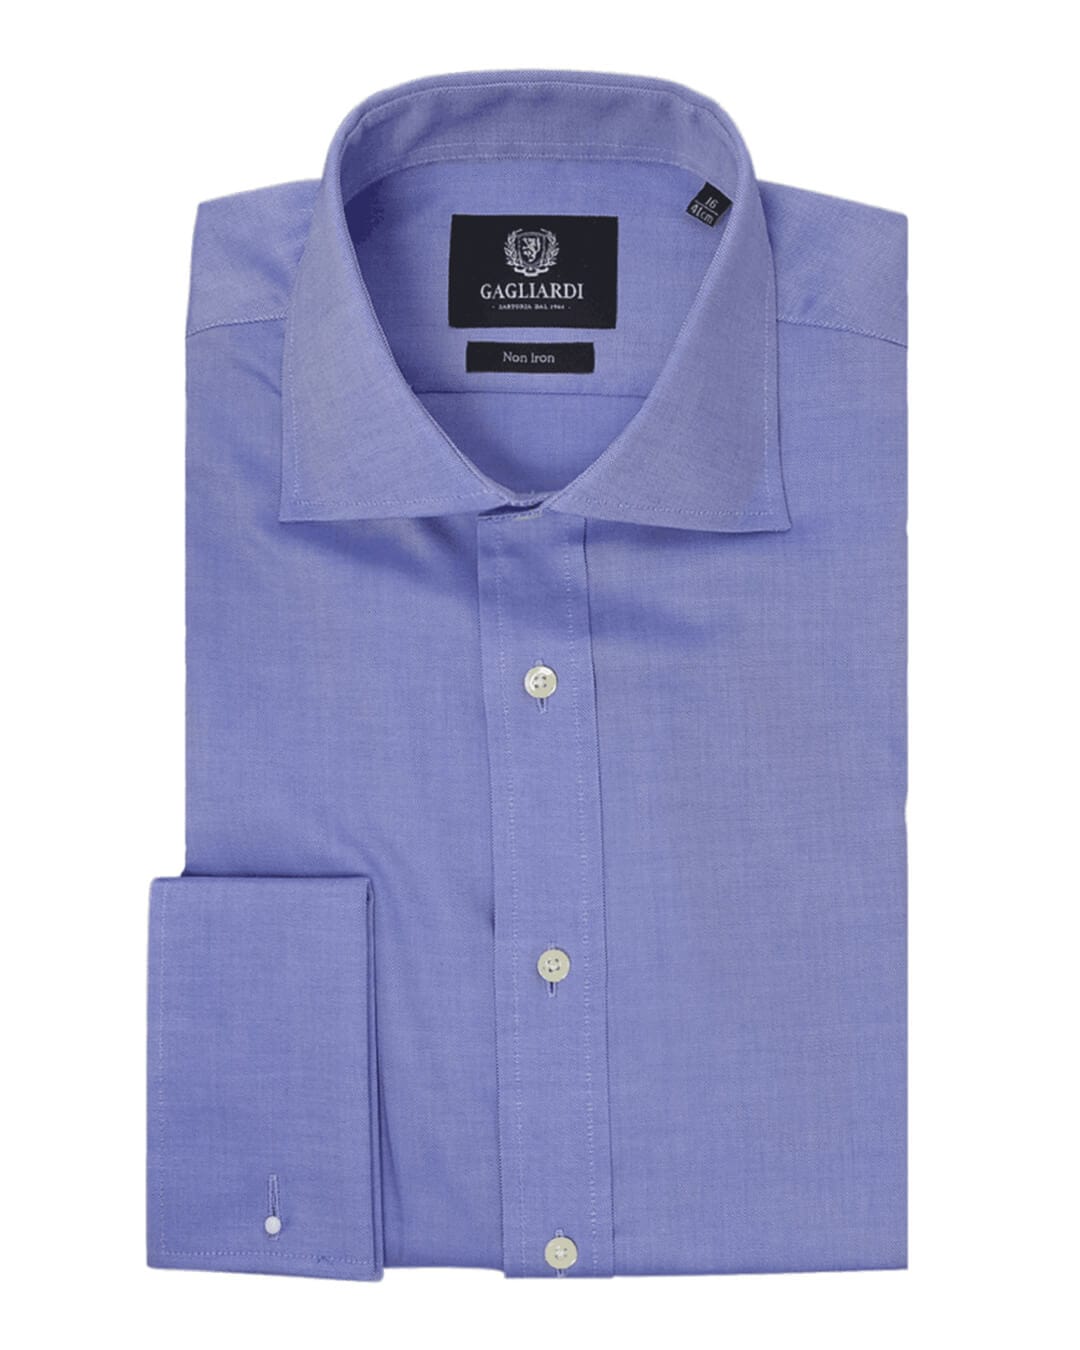 Gagliardi Shirts Gagliardi Blue Oxford Slim Fit Cutaway Collar Double Cuffed Shirt